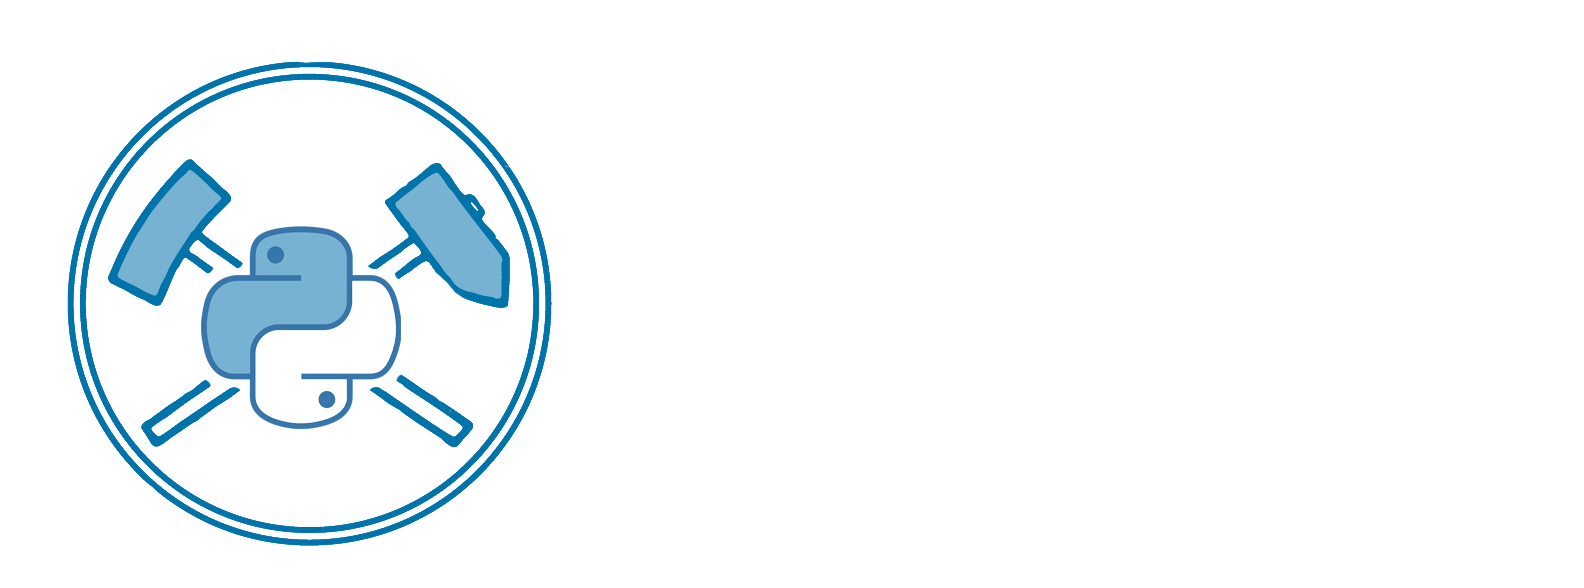 pyiron logo